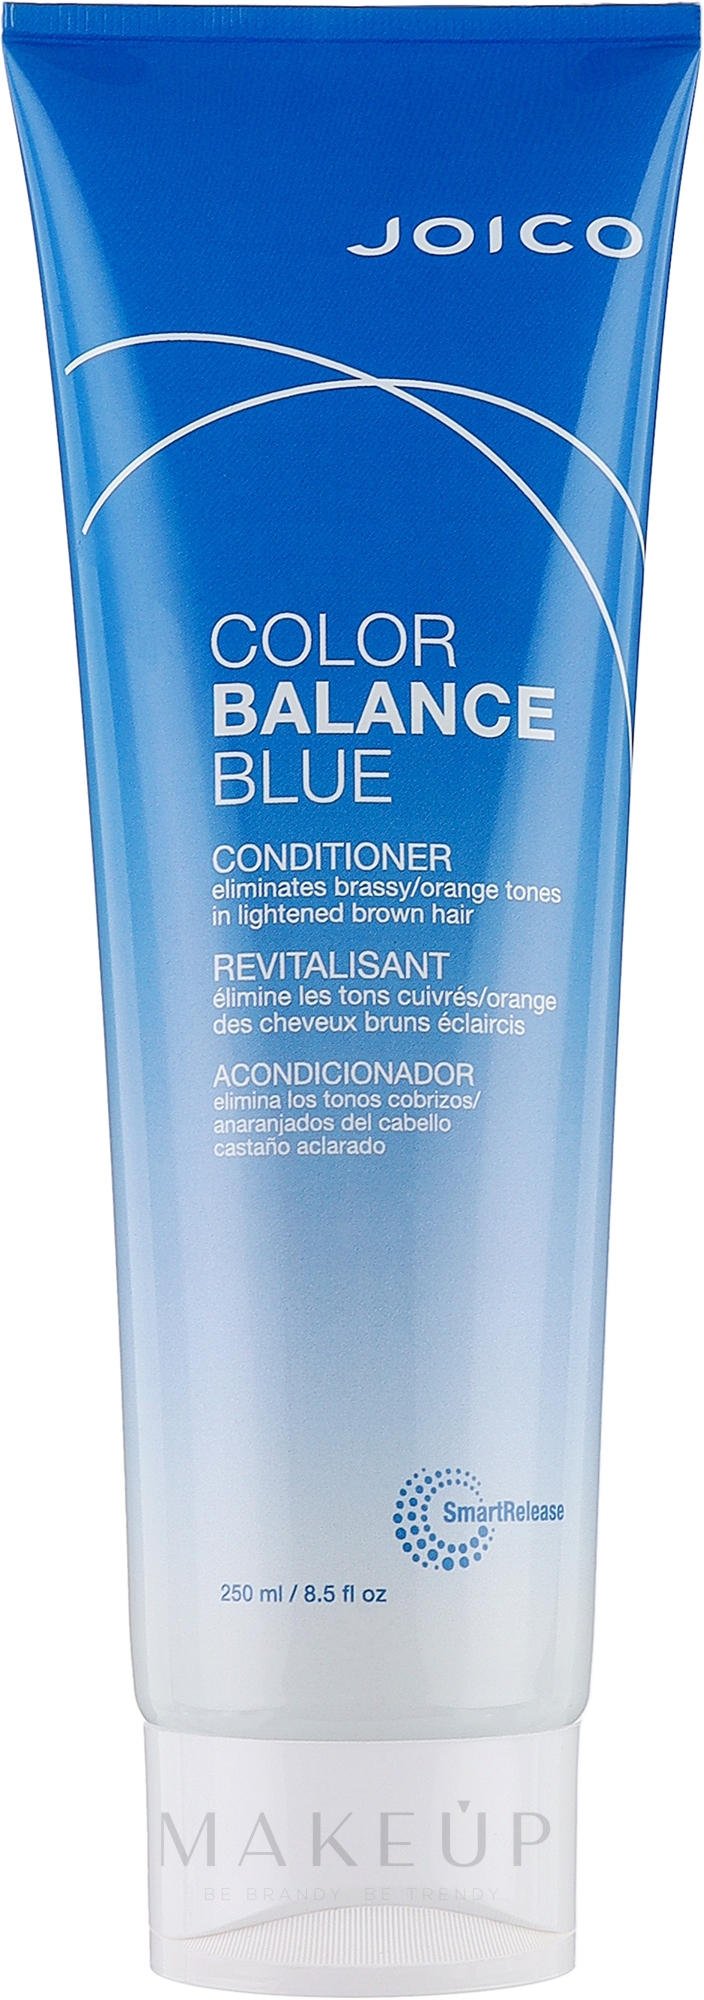 Haarspülung mit Blaupigmenten zur Neutralisierung von unerwünschtem Messing- und Orangestich - Joico Color Balance Blue Conditioner — Bild 250 ml